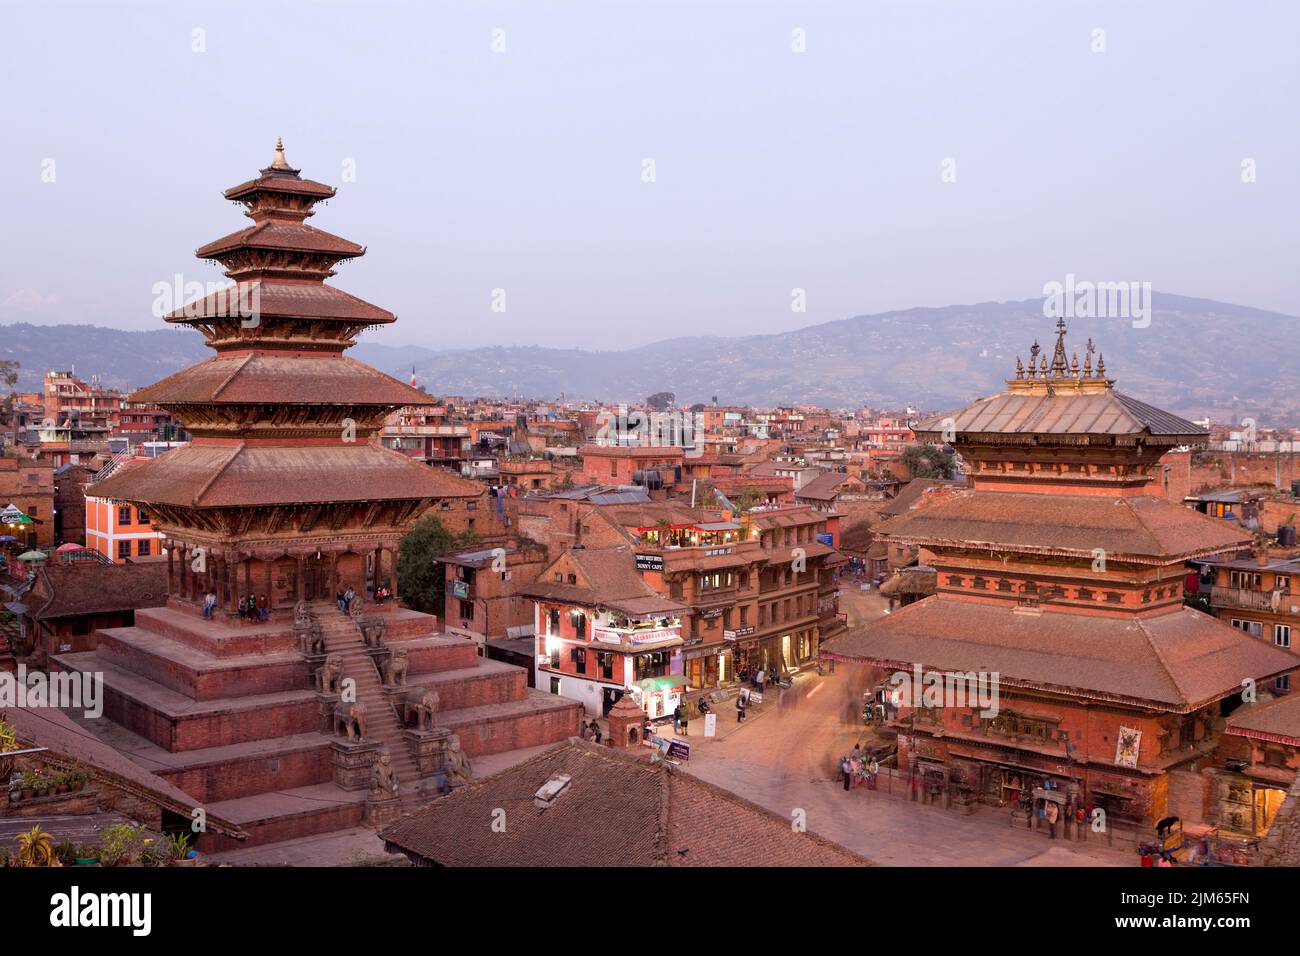 Bhaktapur, Nepal - 28 de octubre de 2012: Nyatapola Temple es una pagoda situada en la ciudad de Bhaktapur, Nepal. El templo es declarado Patrimonio de la Humanidad por la UNESCO. Foto de stock